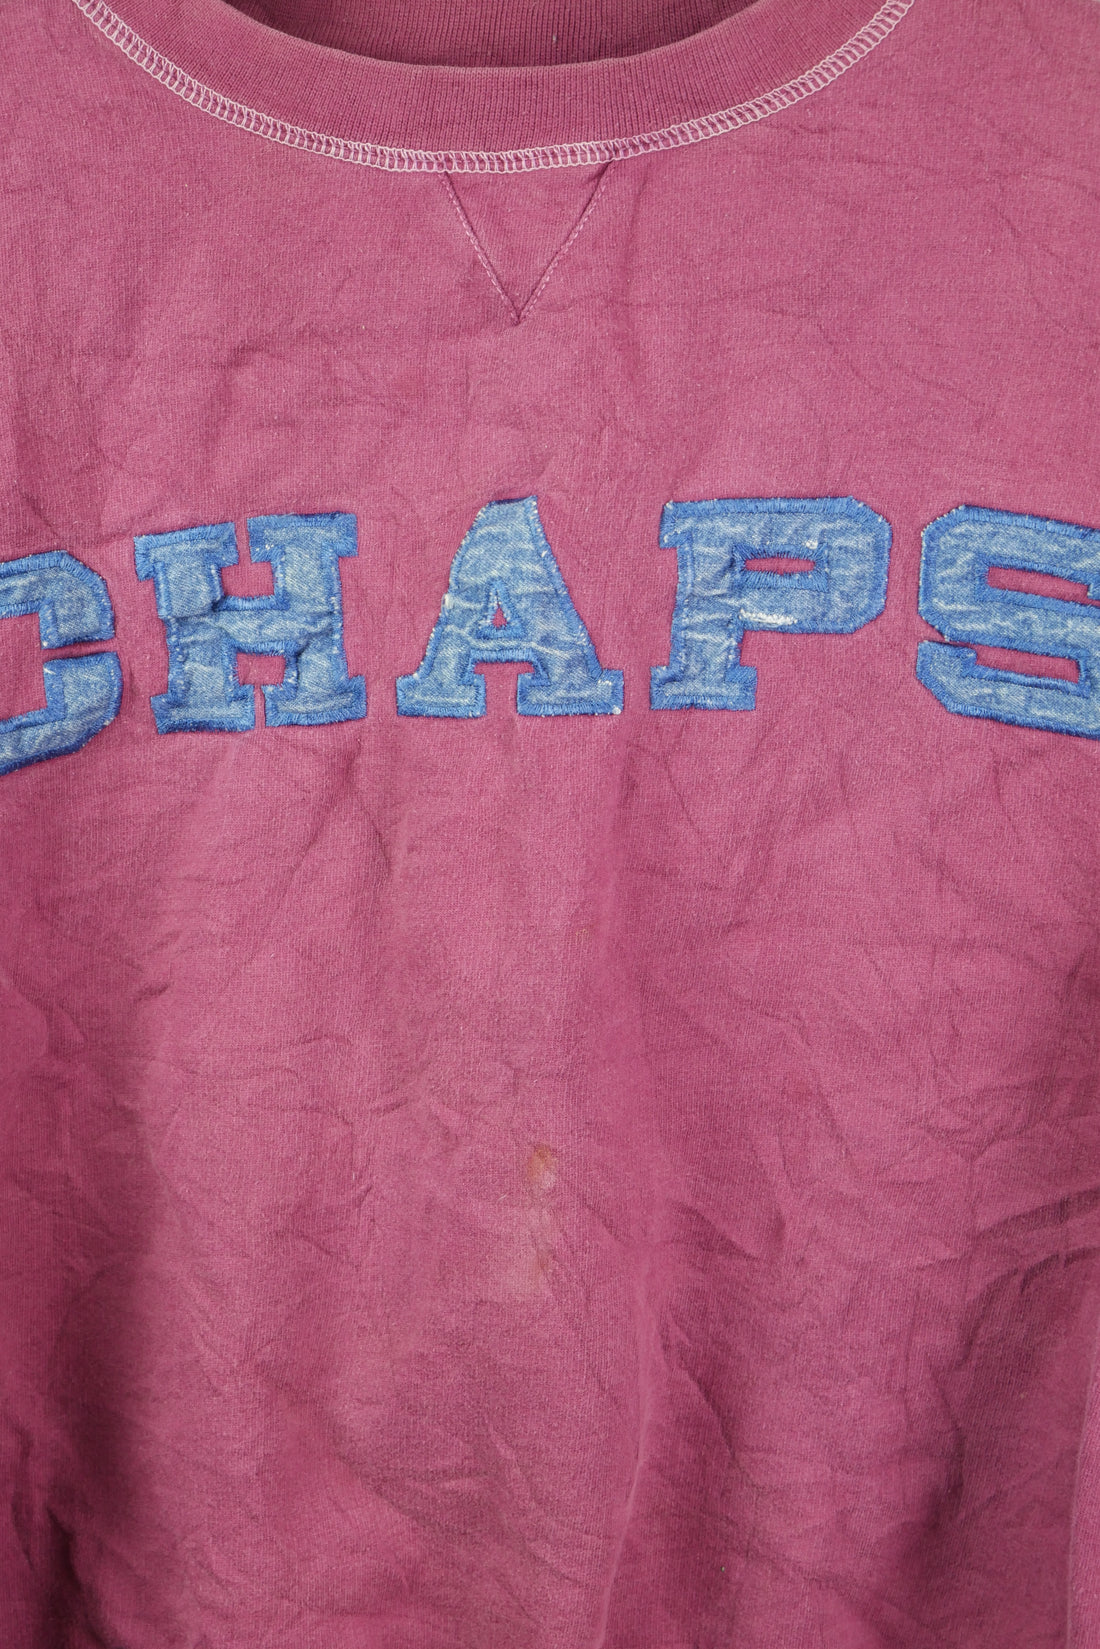 The Vintage Ralph Lauren Denim Chaps Spellout Sweatshirt (Womens S)